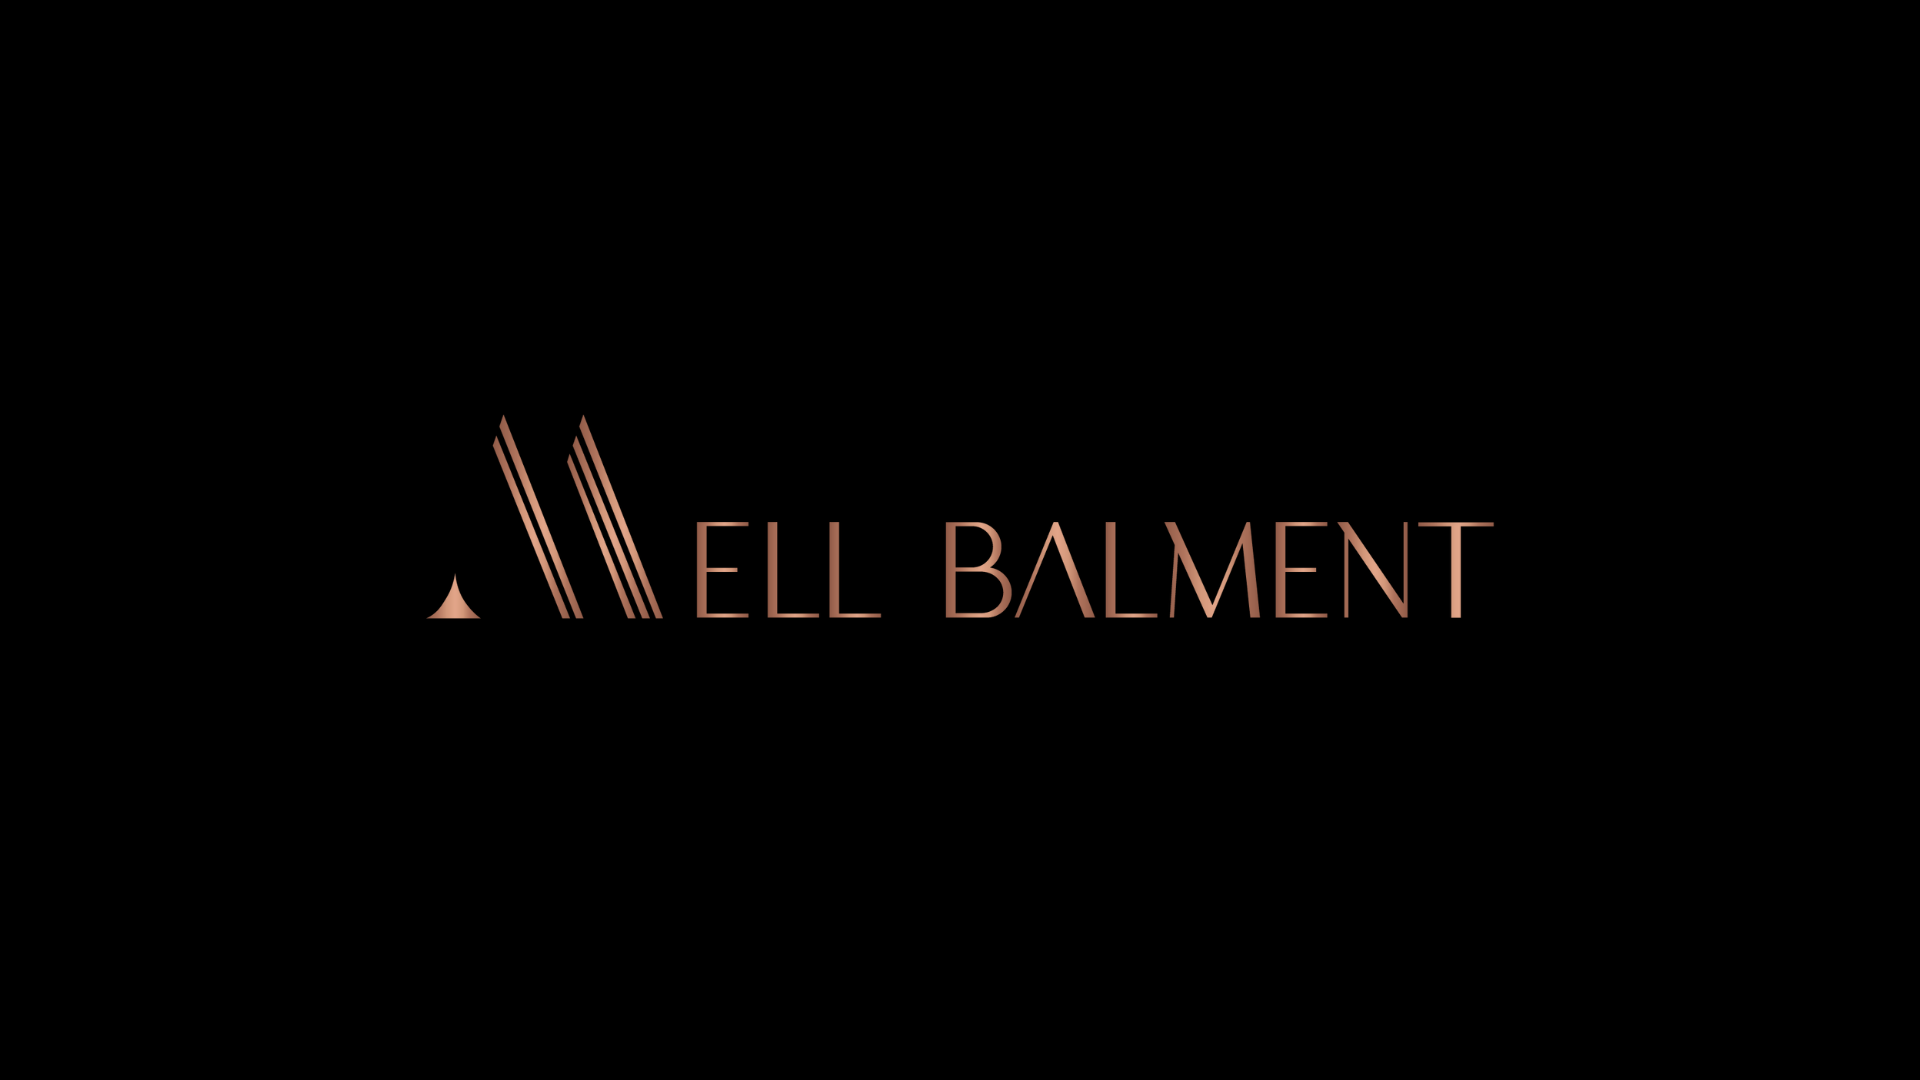 Mell Balment Logo.png